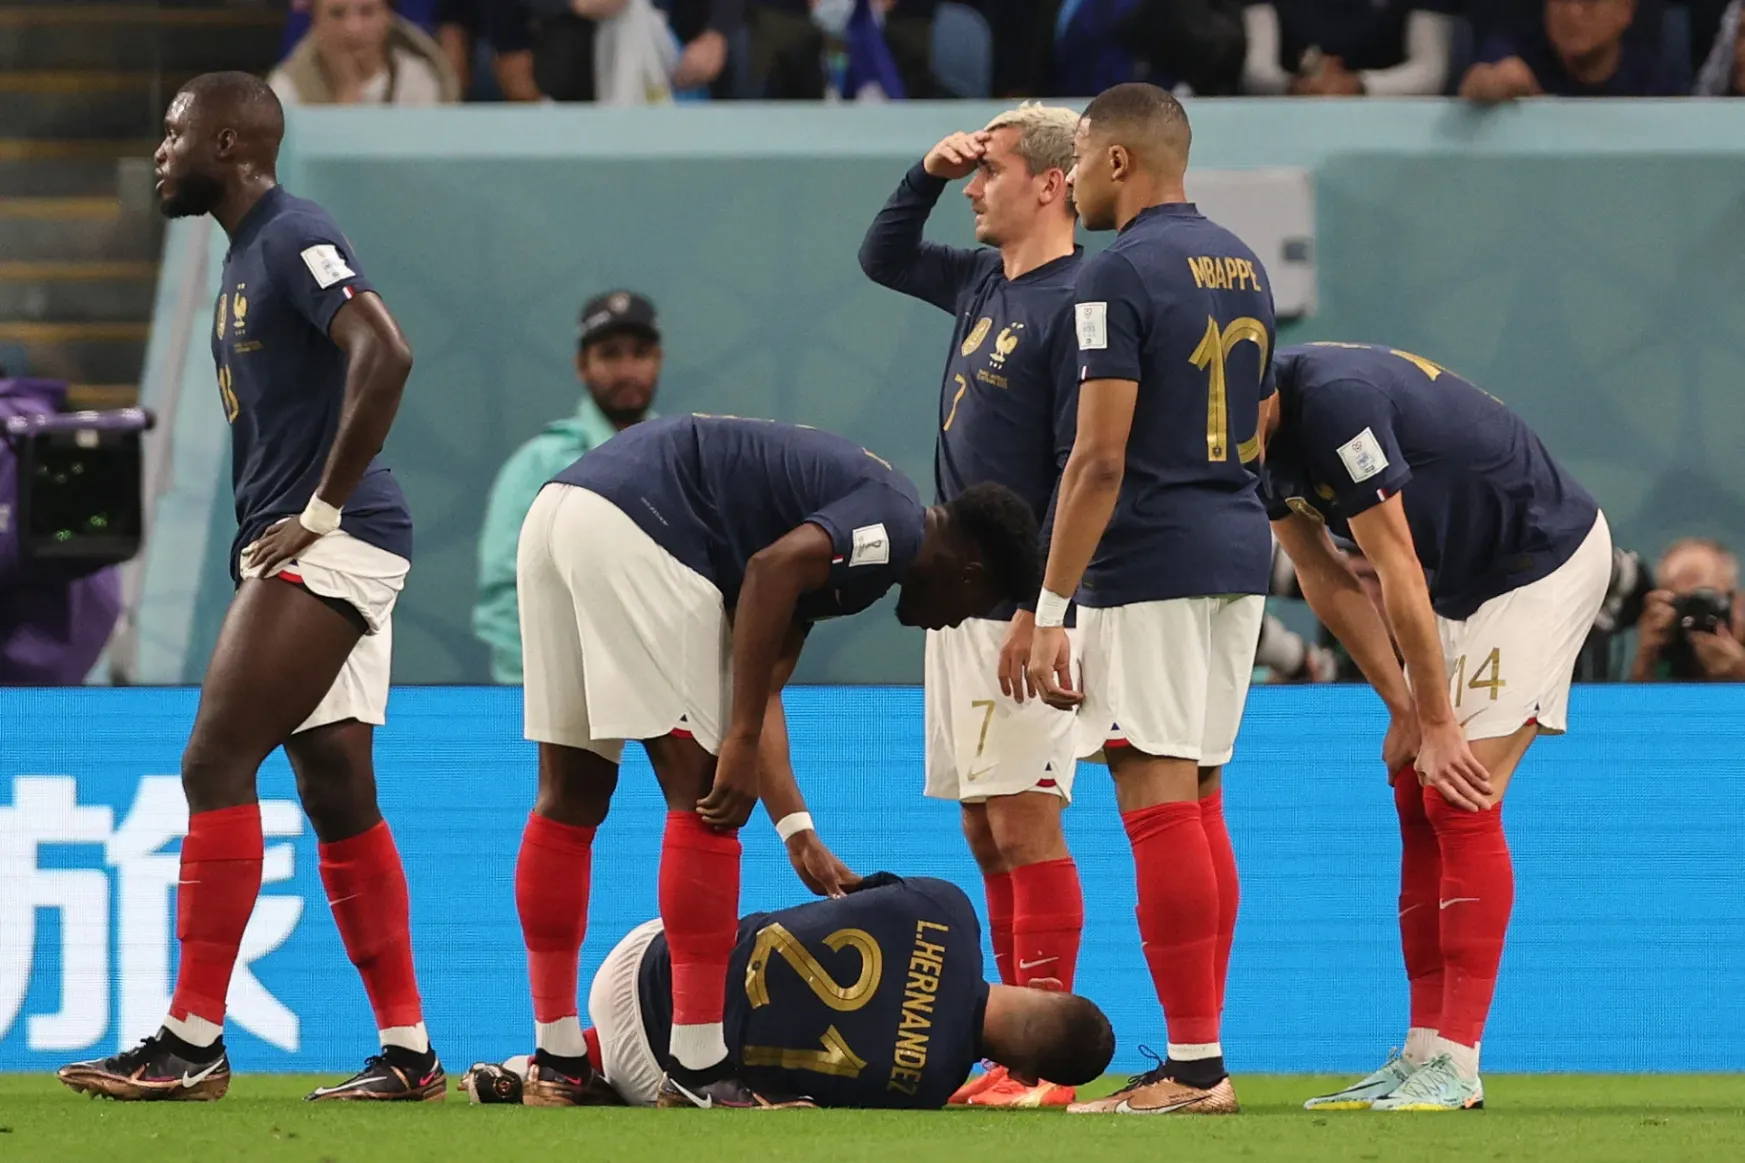 Benzema és Pogba után újabb alapemberét veszítette el a francia válogatott sérülés miatt